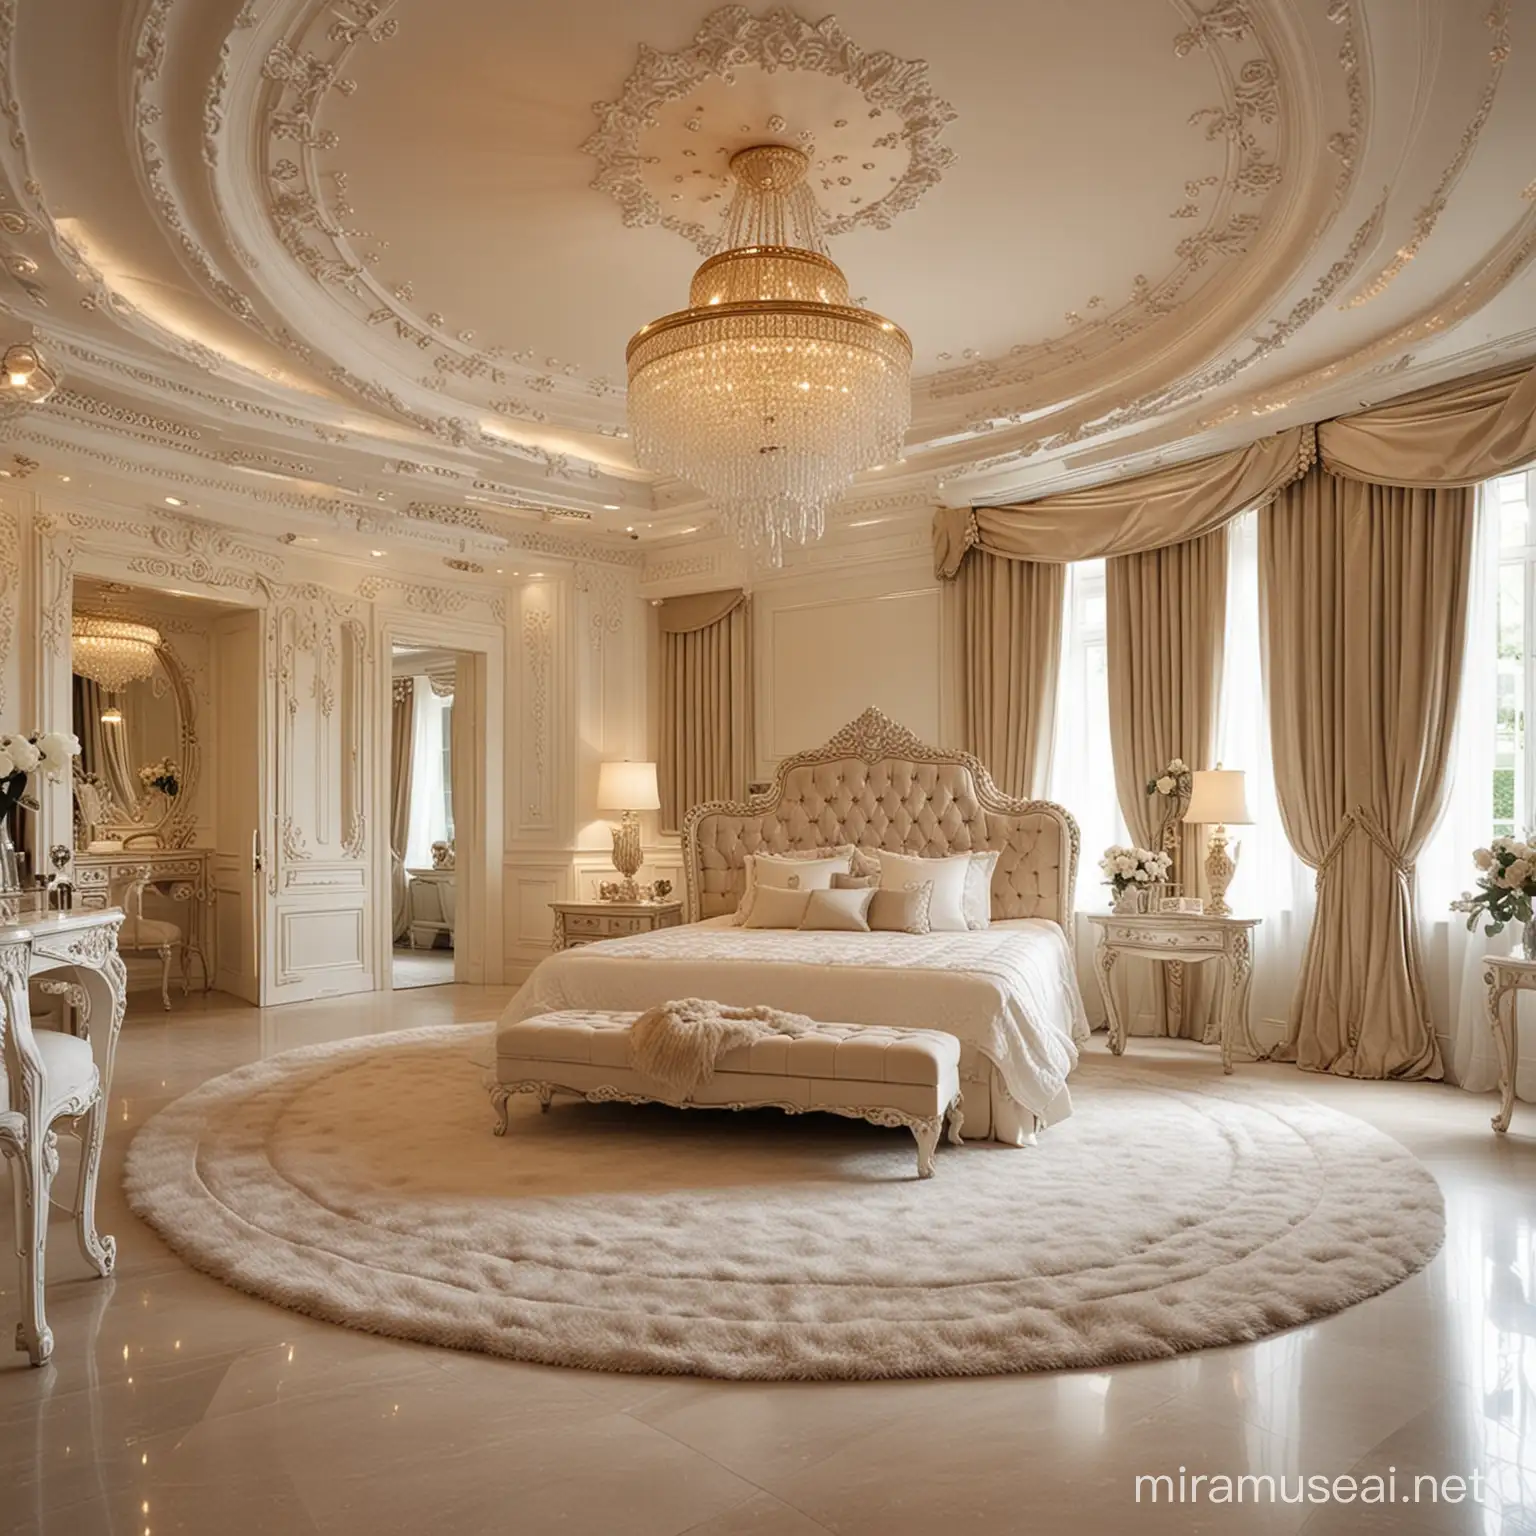 Extravagant Luxury Bedroom with Opulent Decor